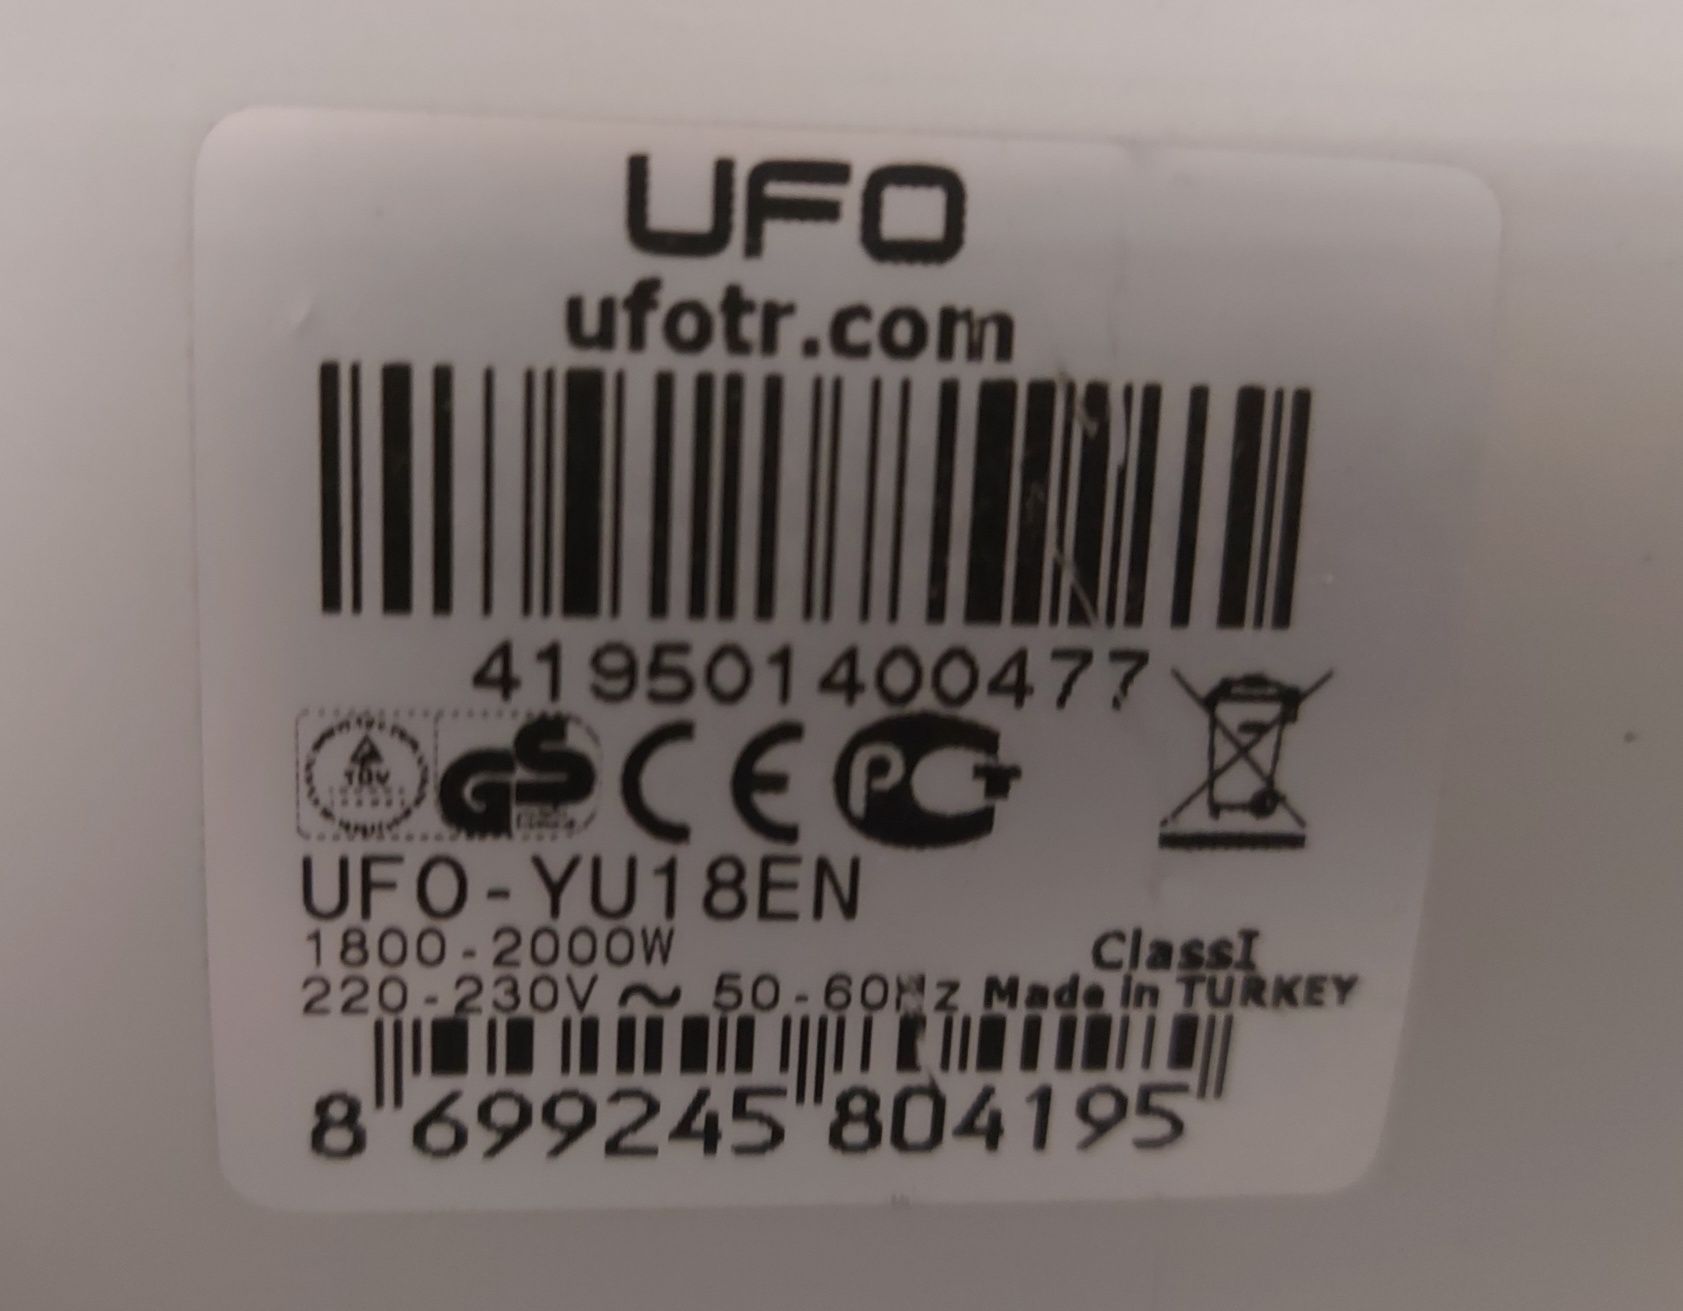 UFO BASIC ufo-yu 18 en 1800